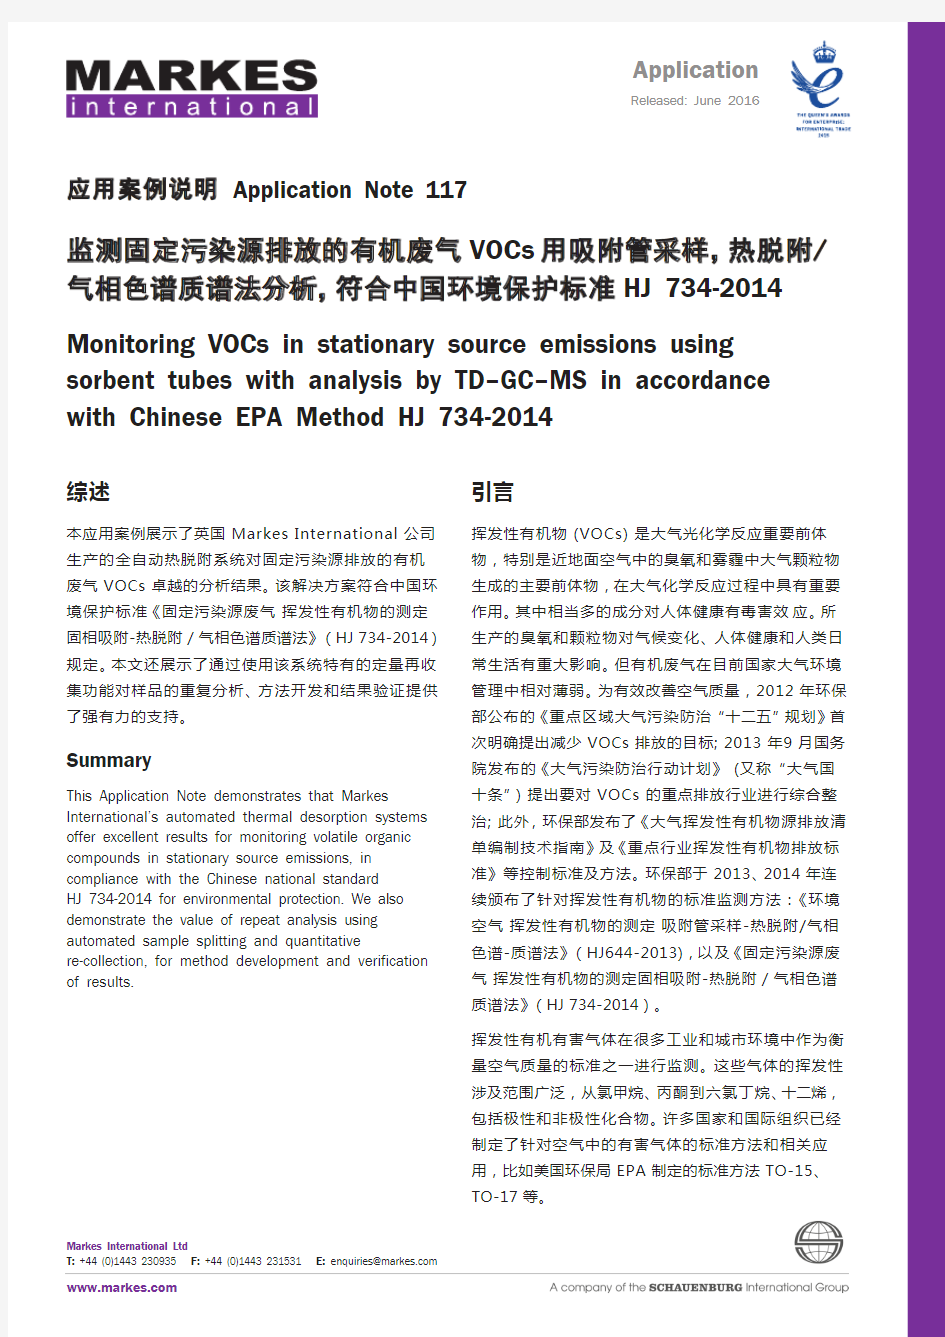 监测固定污染源VOCs 用吸附管采样,热脱附_气相色谱质谱法分析,符合中国环境保护标准 HJ 734-2014